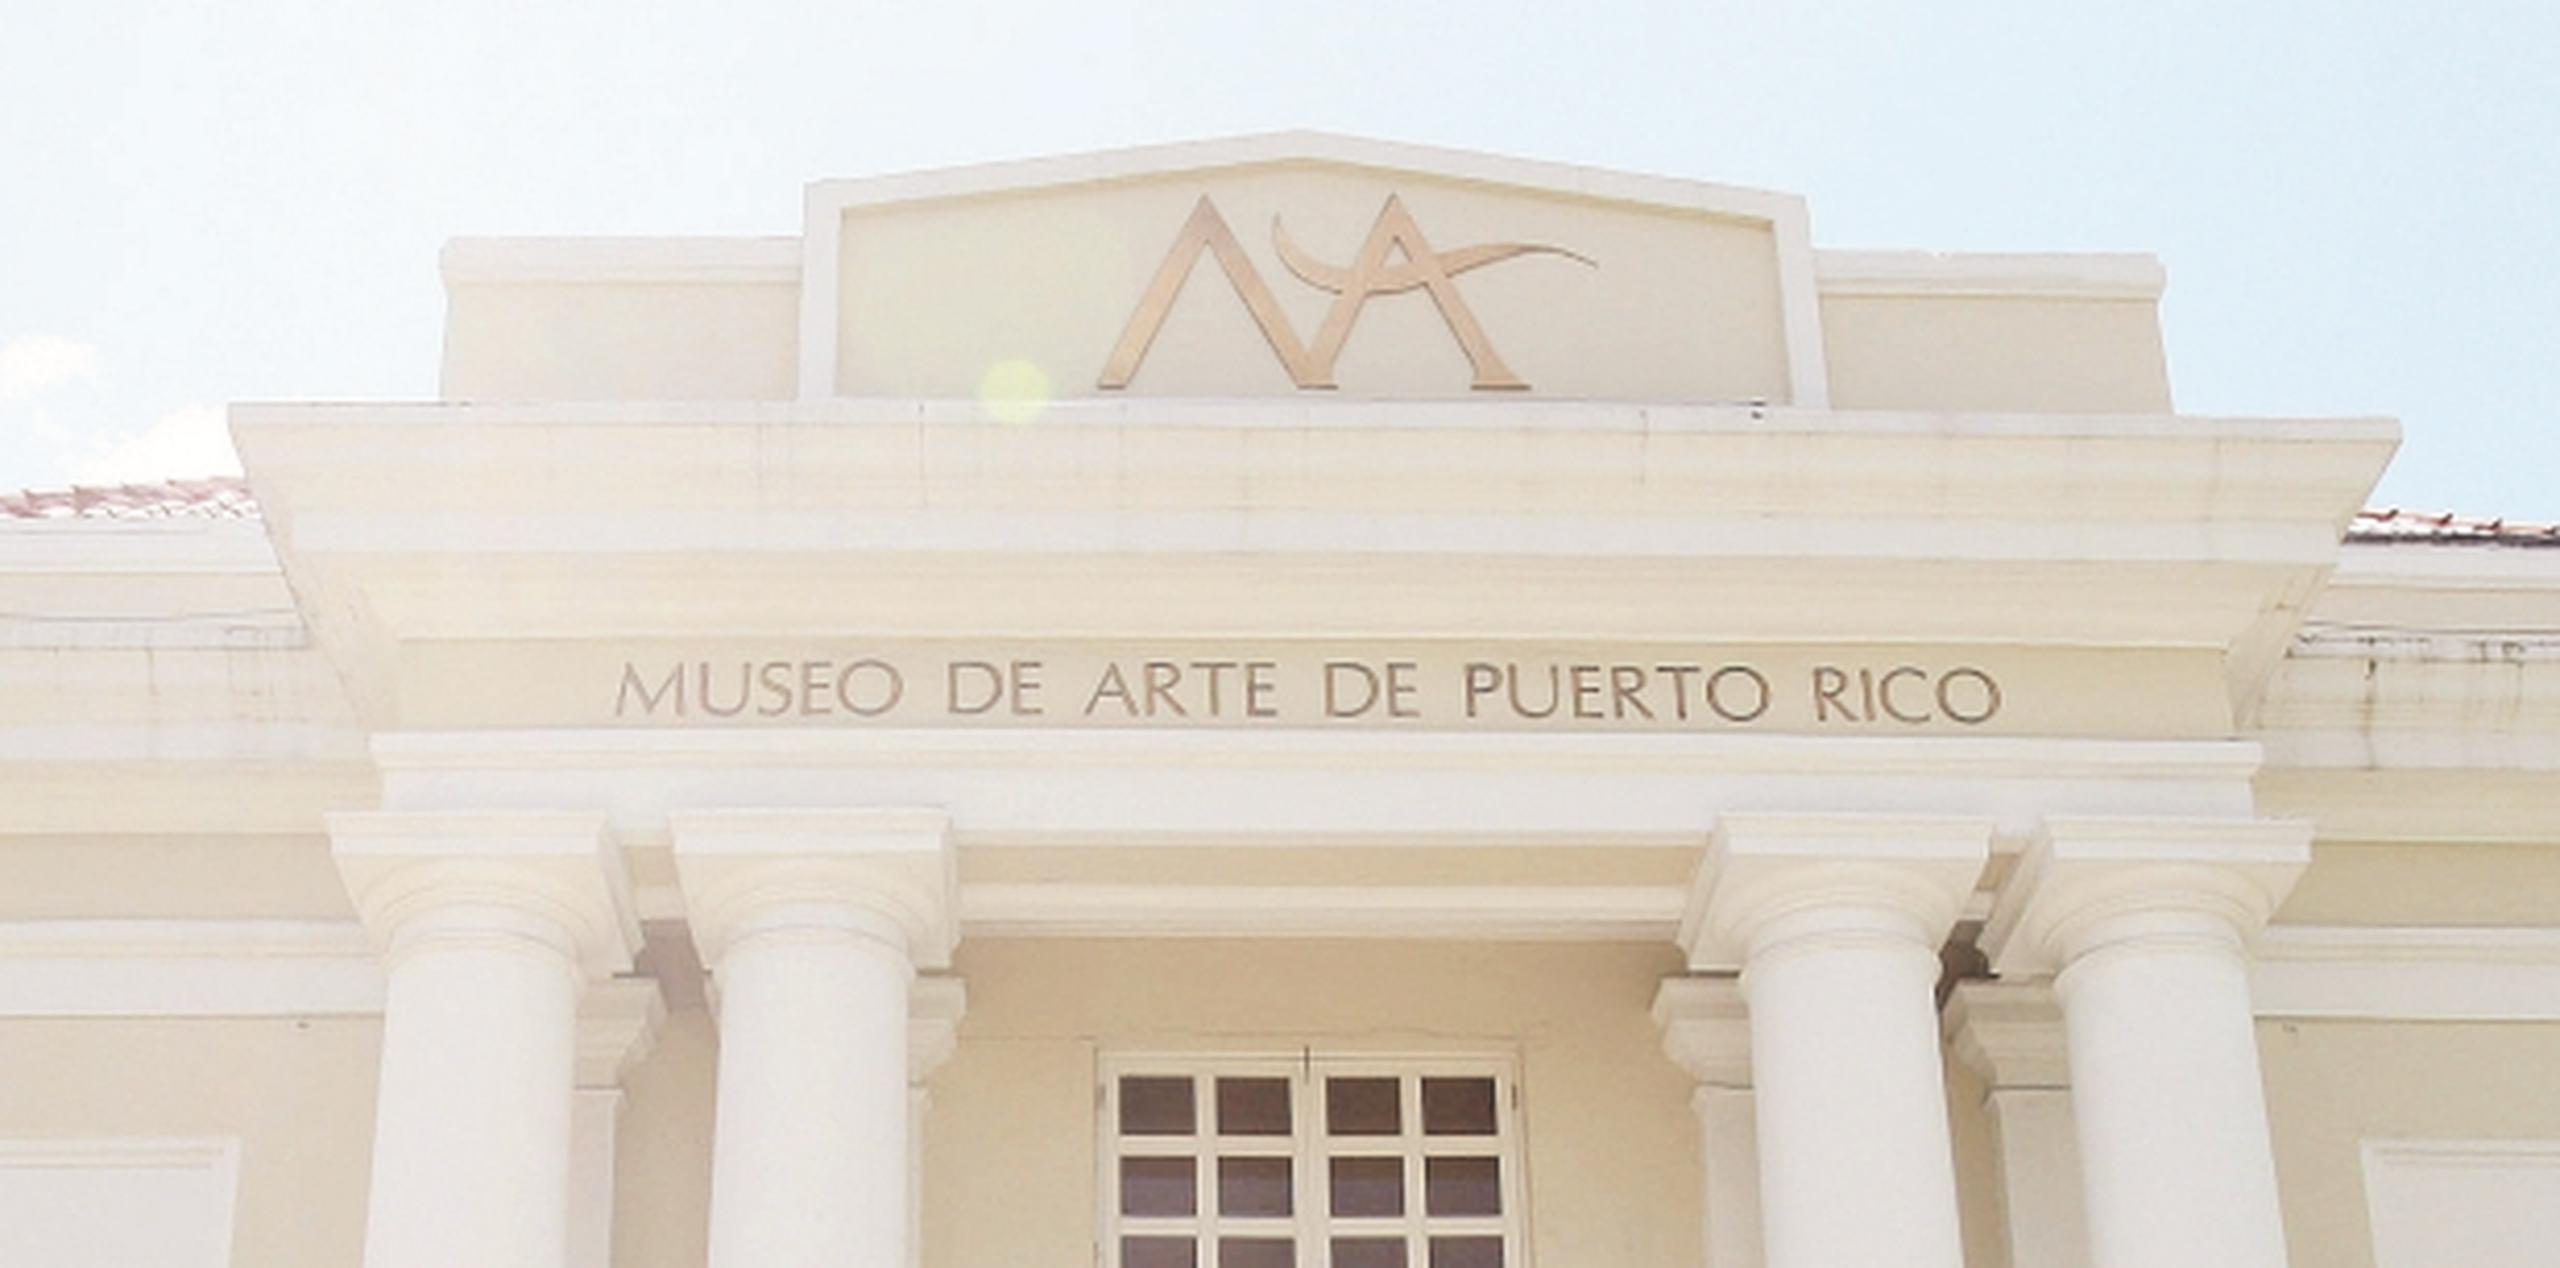 El sector turístico de Puerto Rico es uno de los pocos que ha registrado crecimiento en el último año. (Archivo)